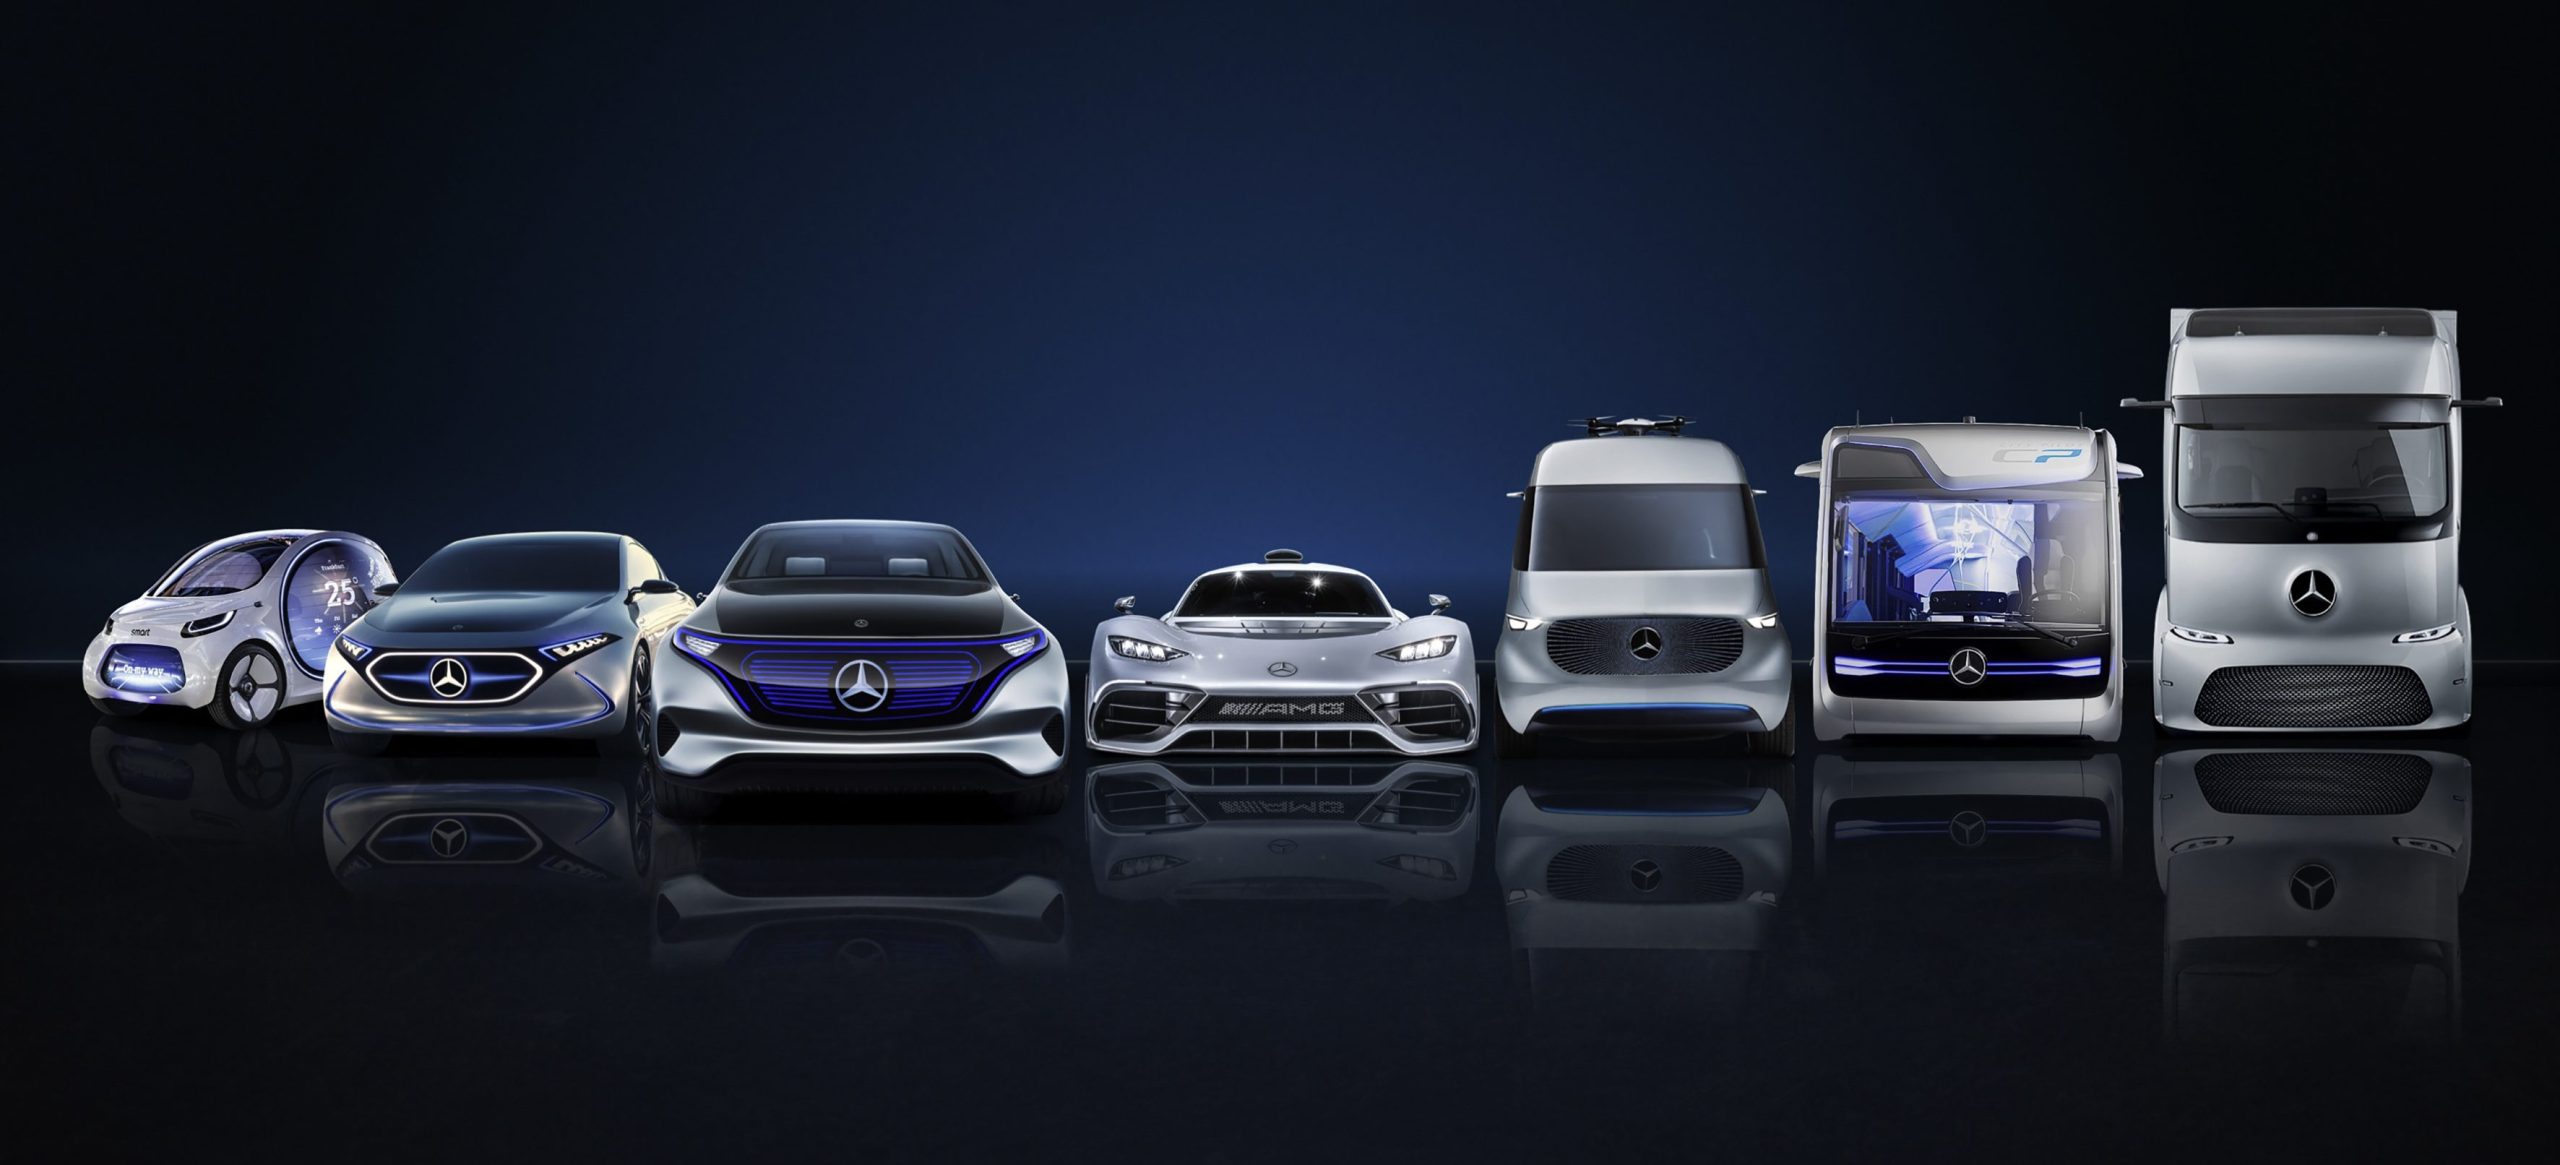 Daimler объявляет об инвестициях в размере 85,000 миллиардов долларов для ускорения электрификации своих автомобилей.